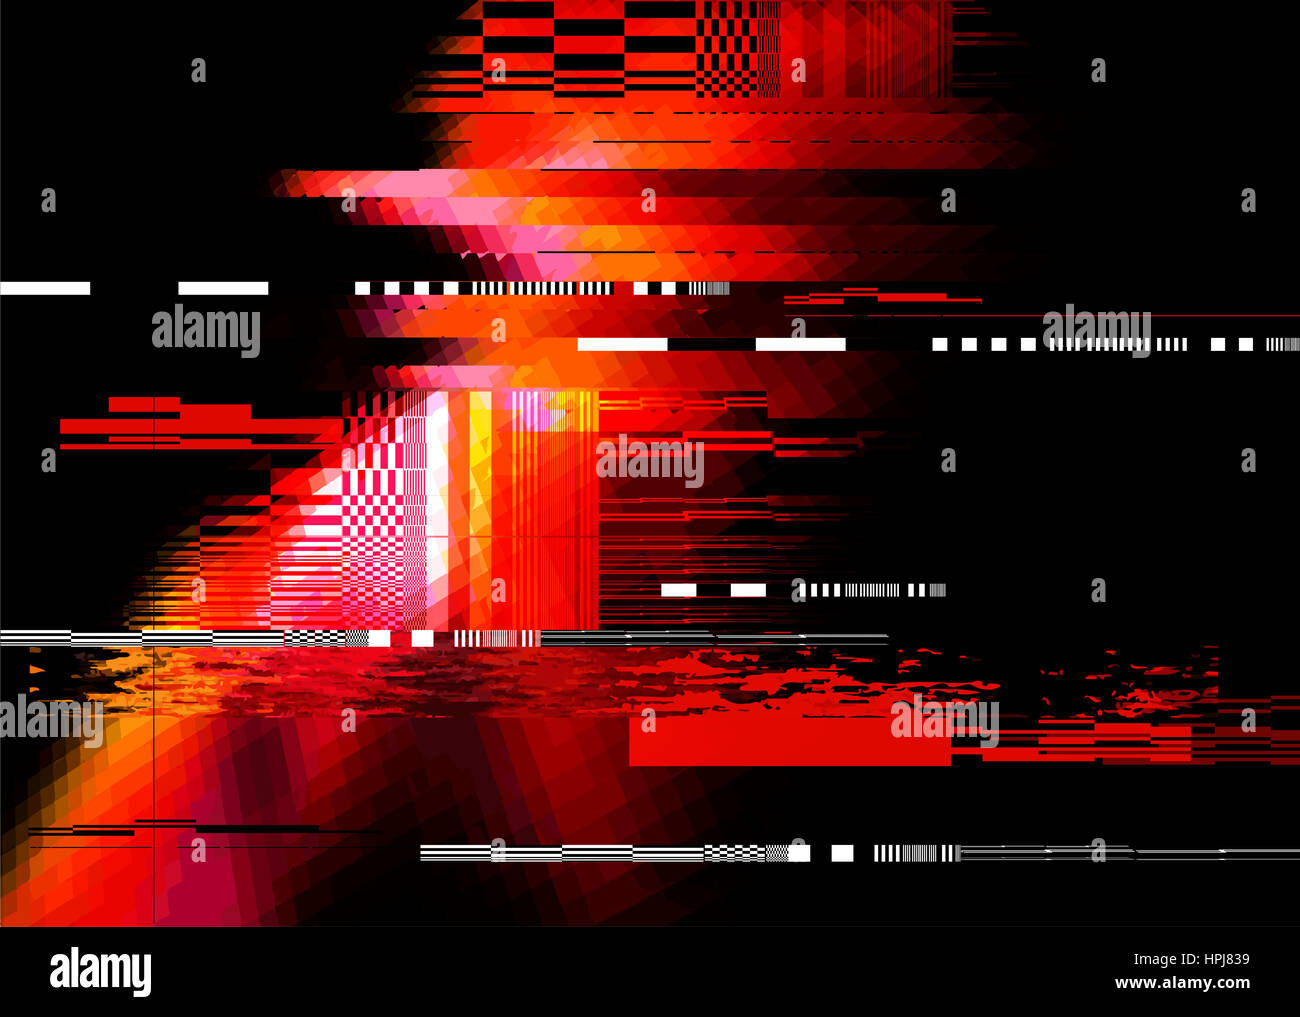 Ein Redglitch Geräusch Verzerrung Textur Hintergrund. Vektor-illustration Stockfoto